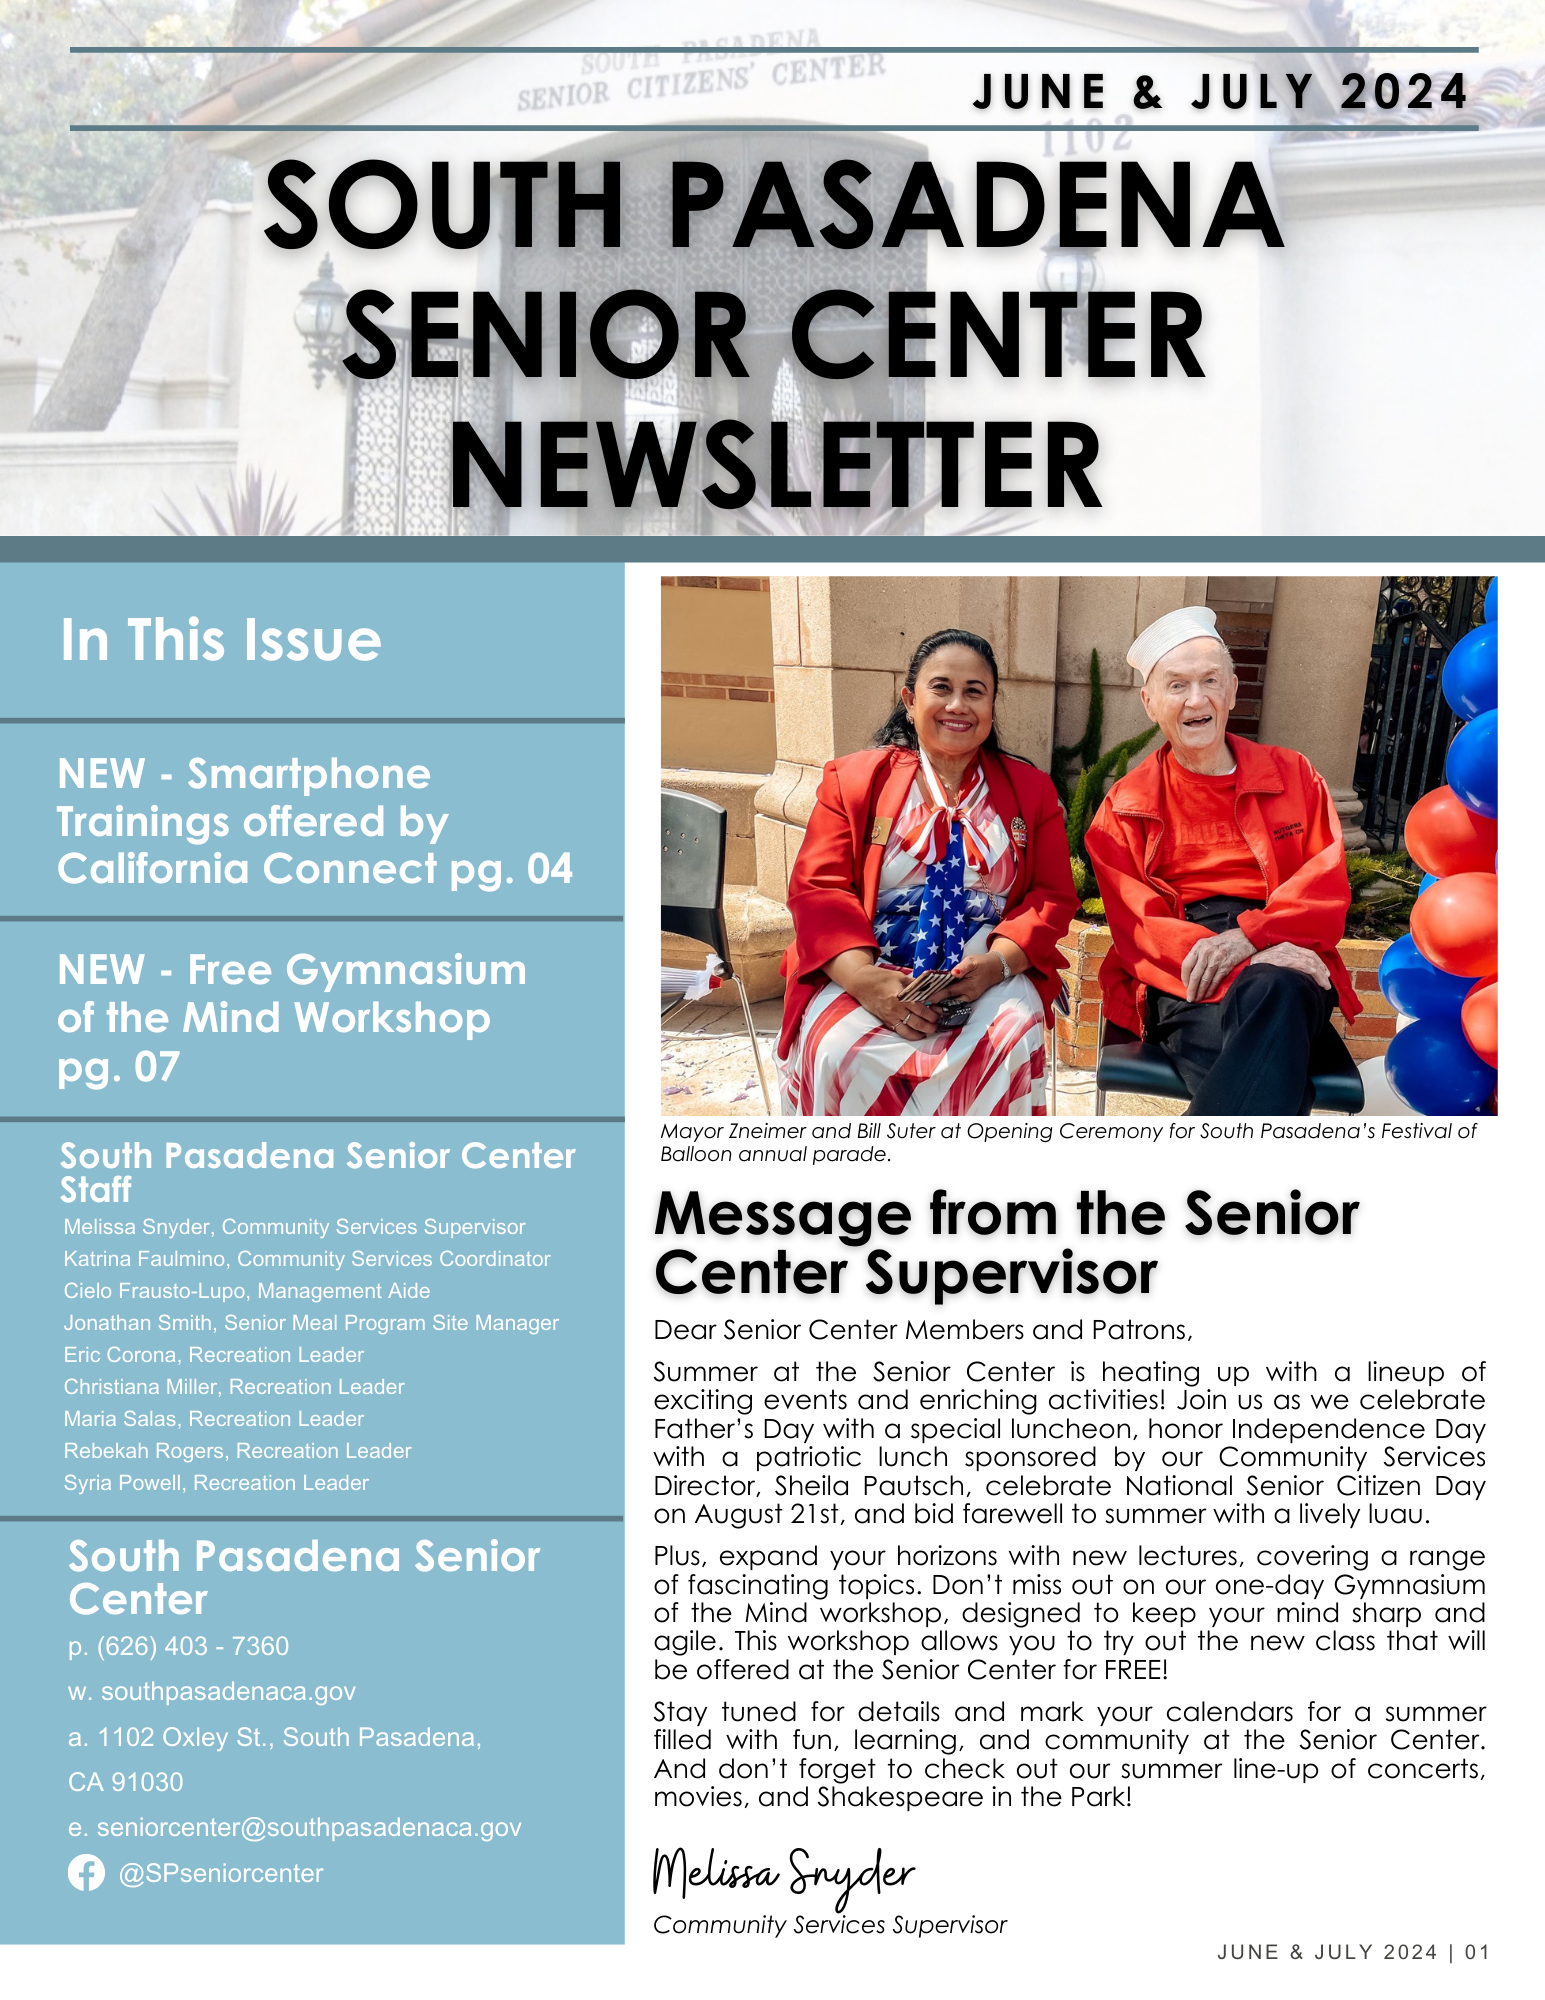 SC Newsletter - June & July 2024 (1).png